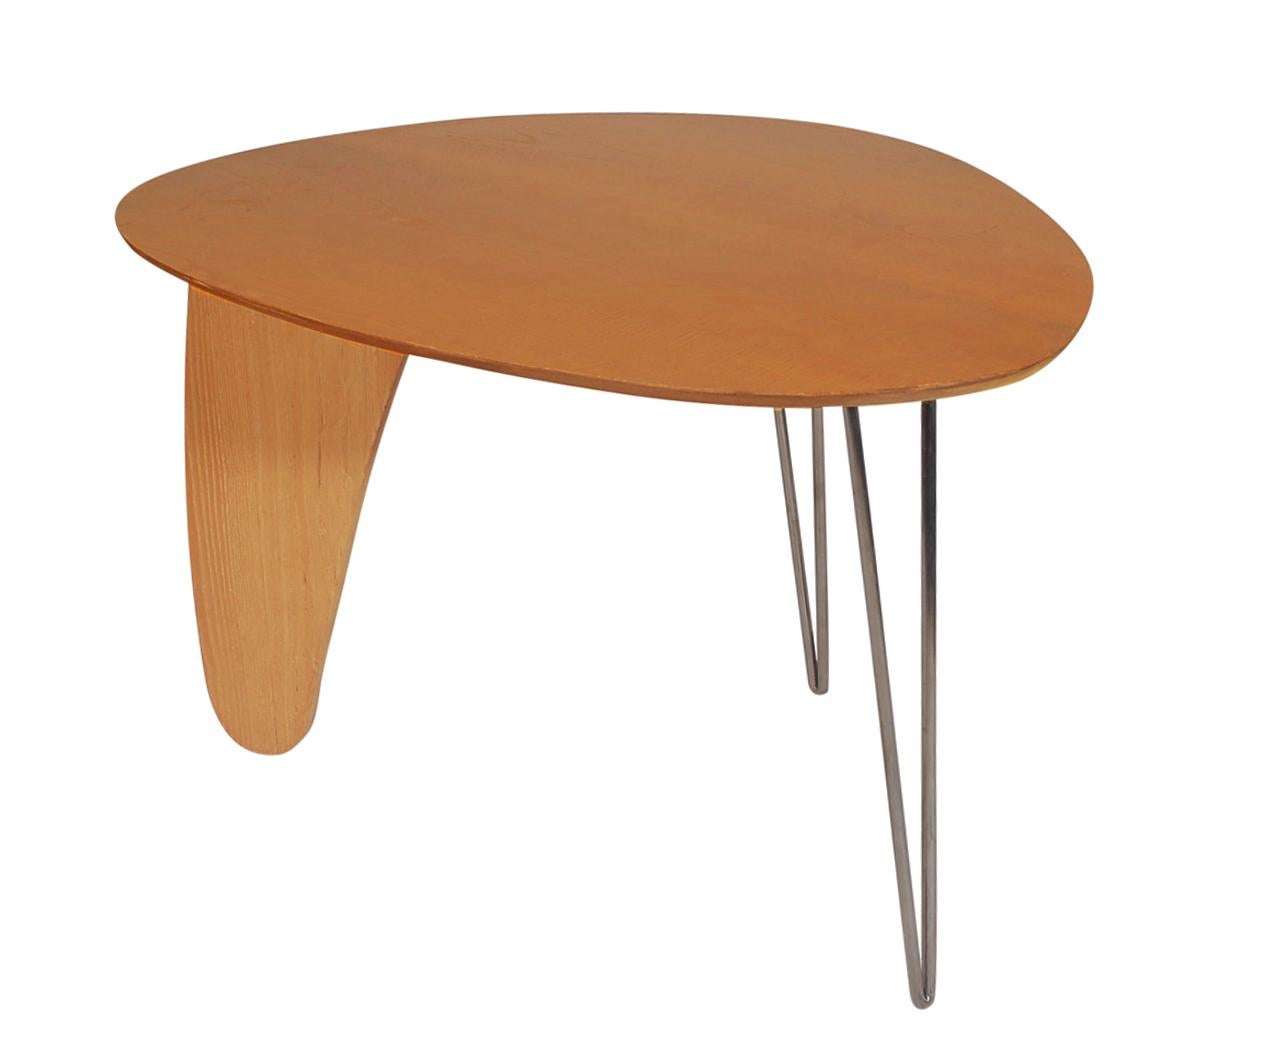 Un tavolo da pranzo Rutter dal design splendido realizzato da Isamu Noguchi per Herman Miller. Presenta una struttura in compensato di betulla fiammato con gambe a forcina in acciaio. Nel complesso tutto in ottime condizioni.